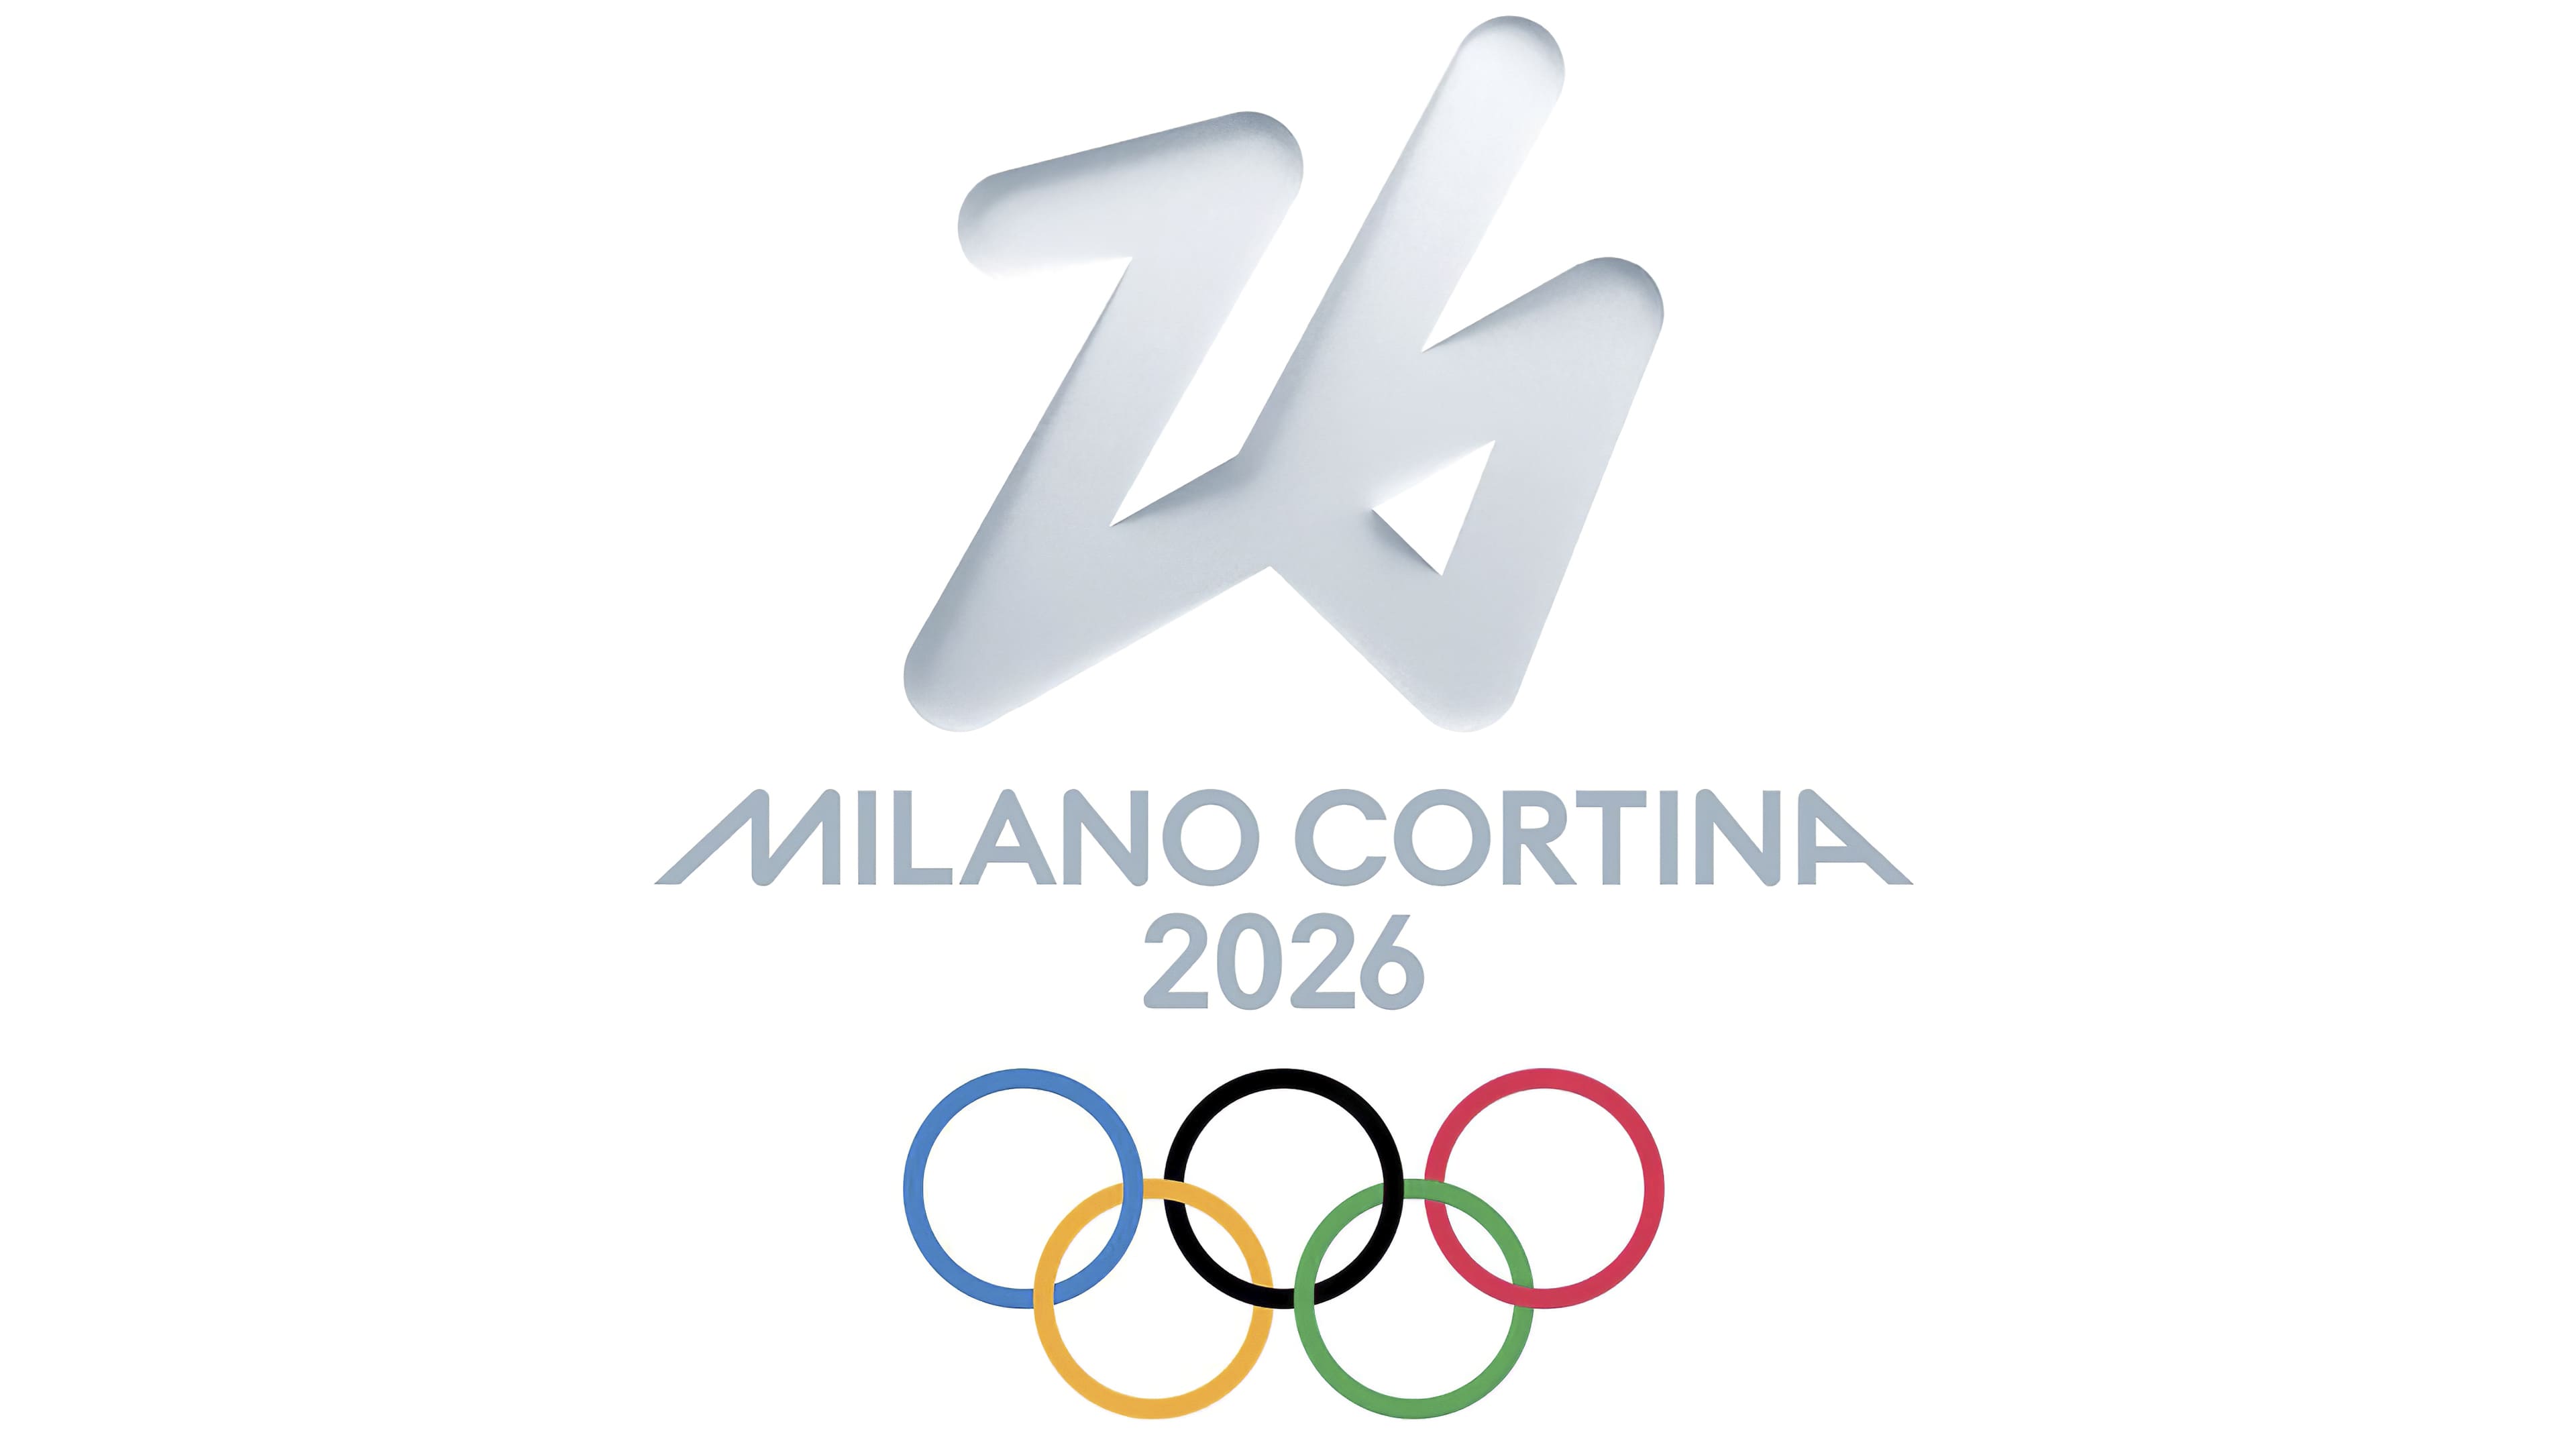 Хоккей 2026. Символ Италии Олимпийский игр 2026 года. Эмблема зимних Олимпийских игр 2026 года.